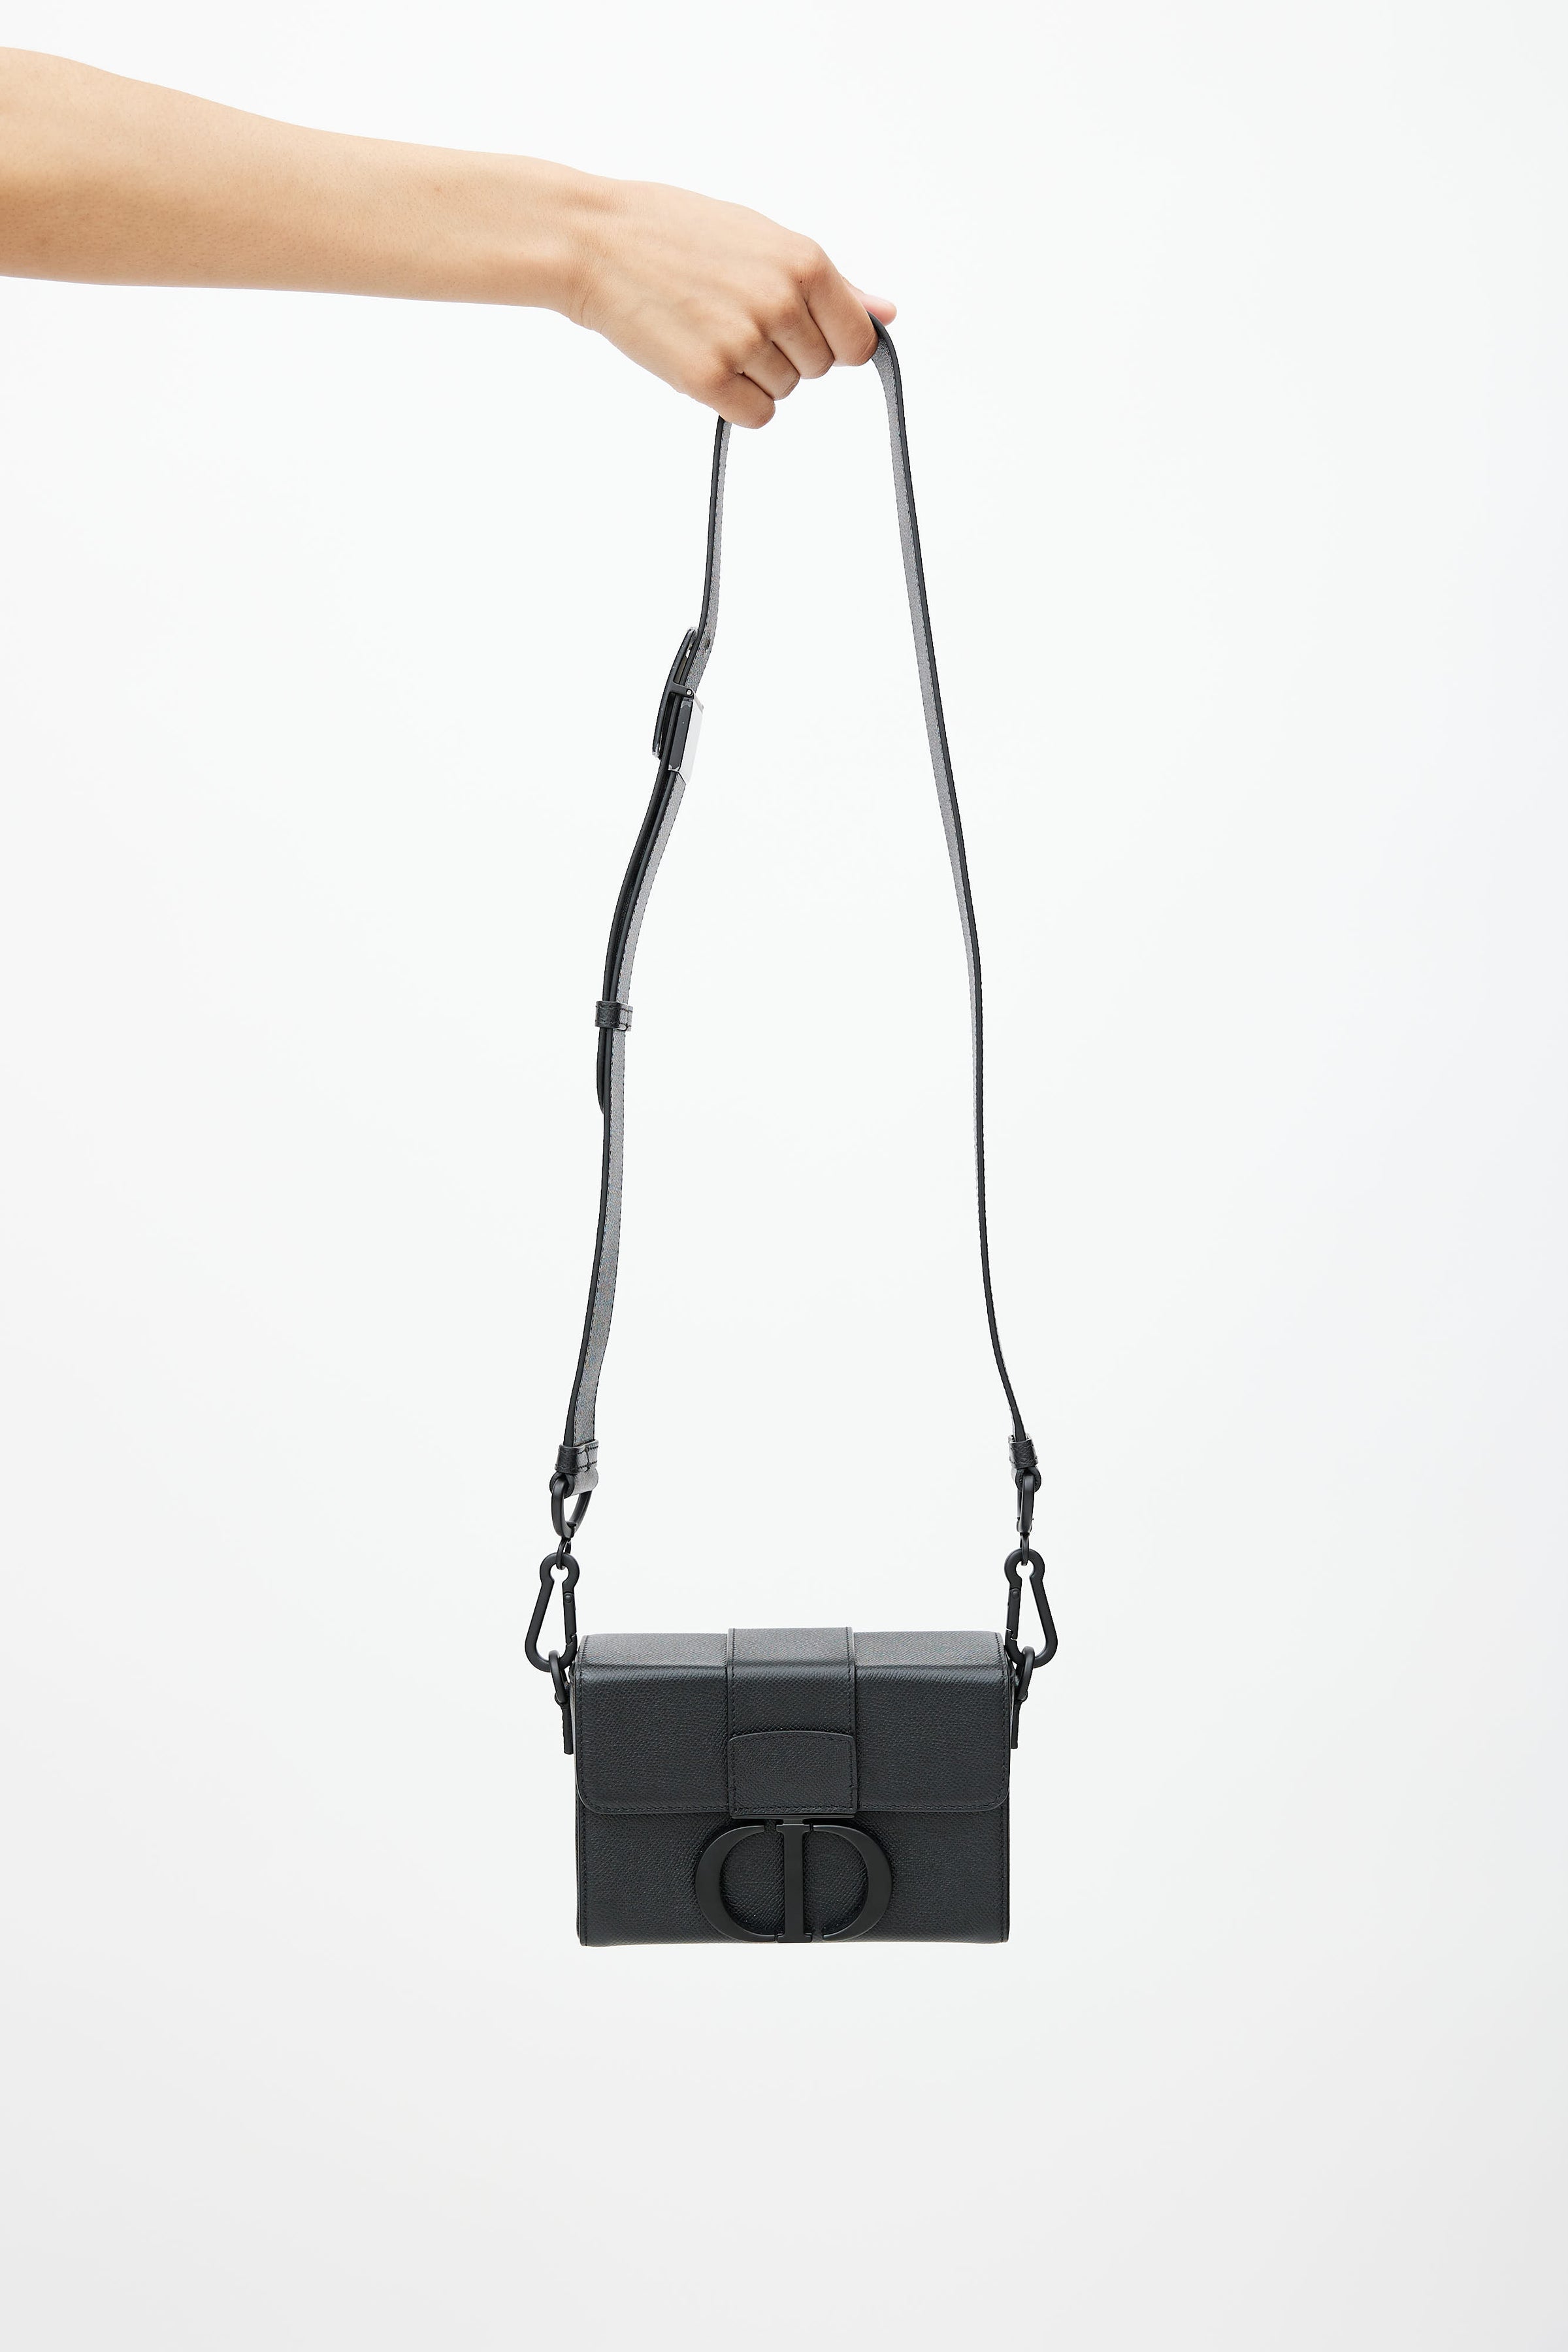 Túi xách Dior Lady bag Cao cấp Cập nhật mẫu tháng 8